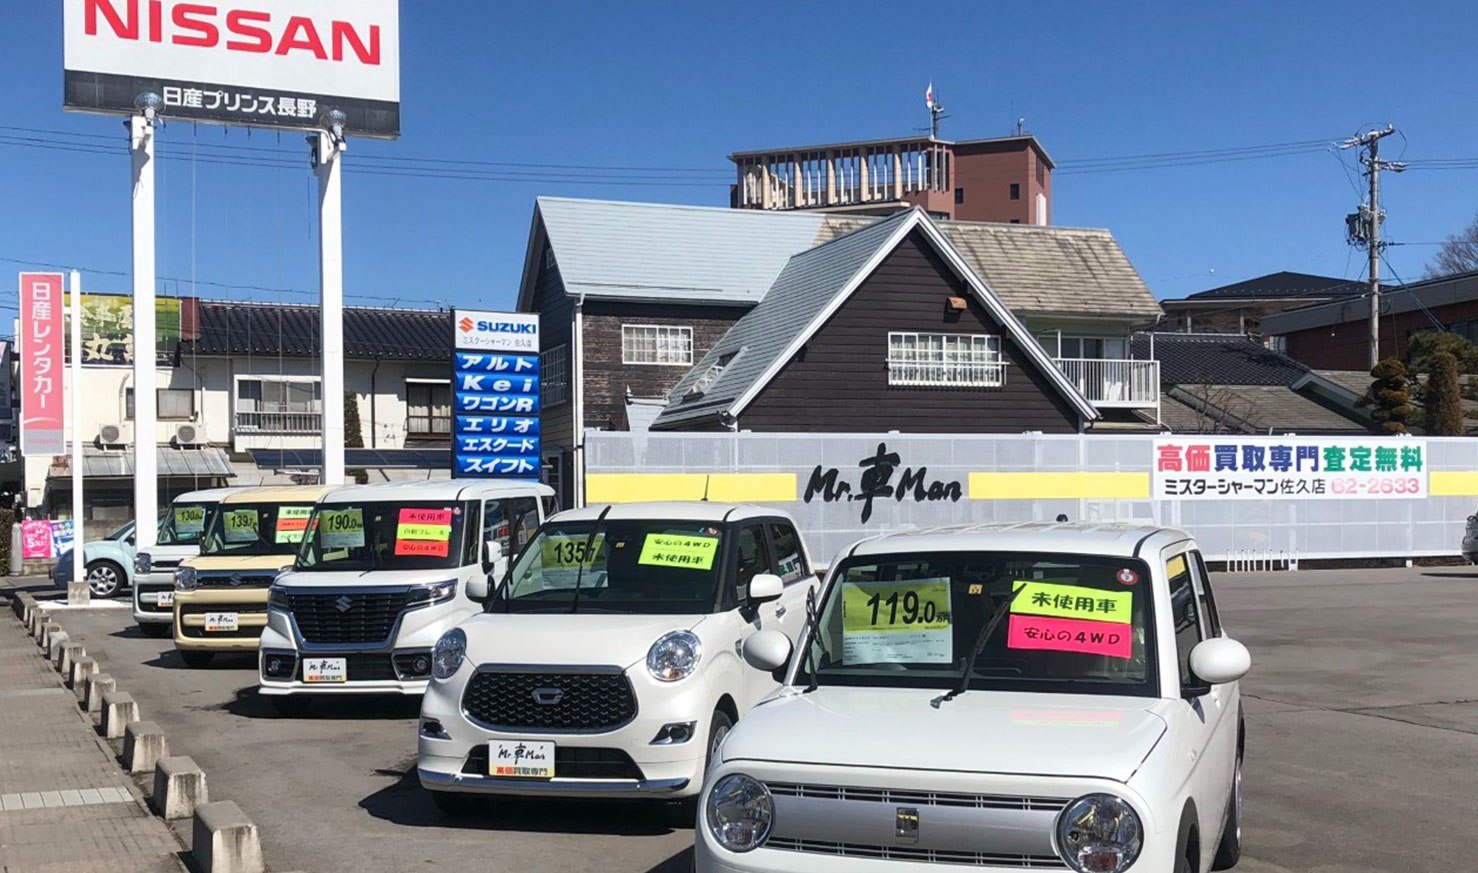 ミスターシャーマン 佐久店 公式 ミスターシャーマン 長野県の未使用車 中古車販売店